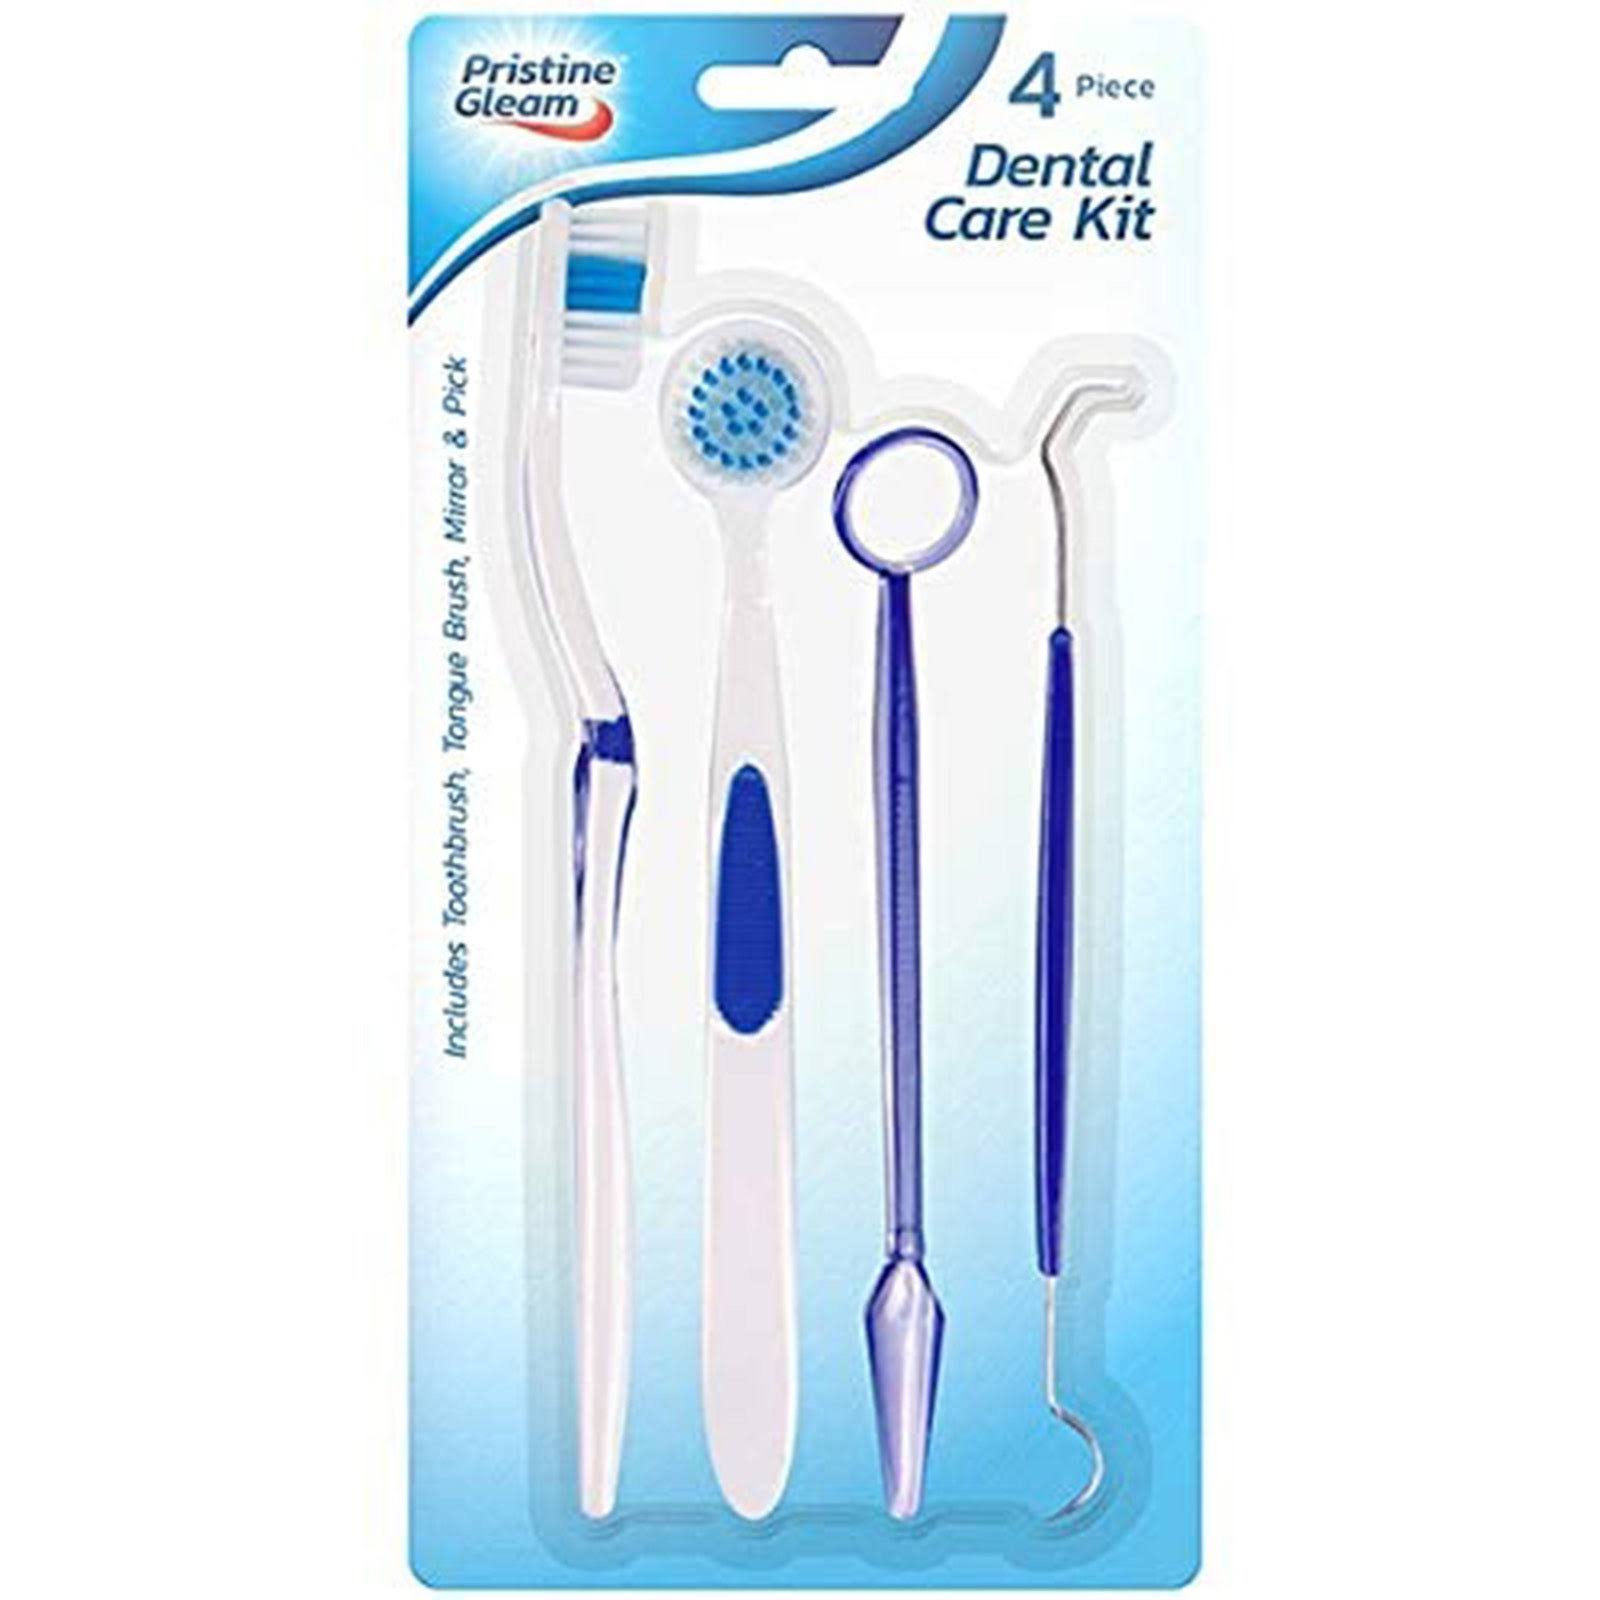 Pristine Gleam - 4-Piece Dental Care Kit